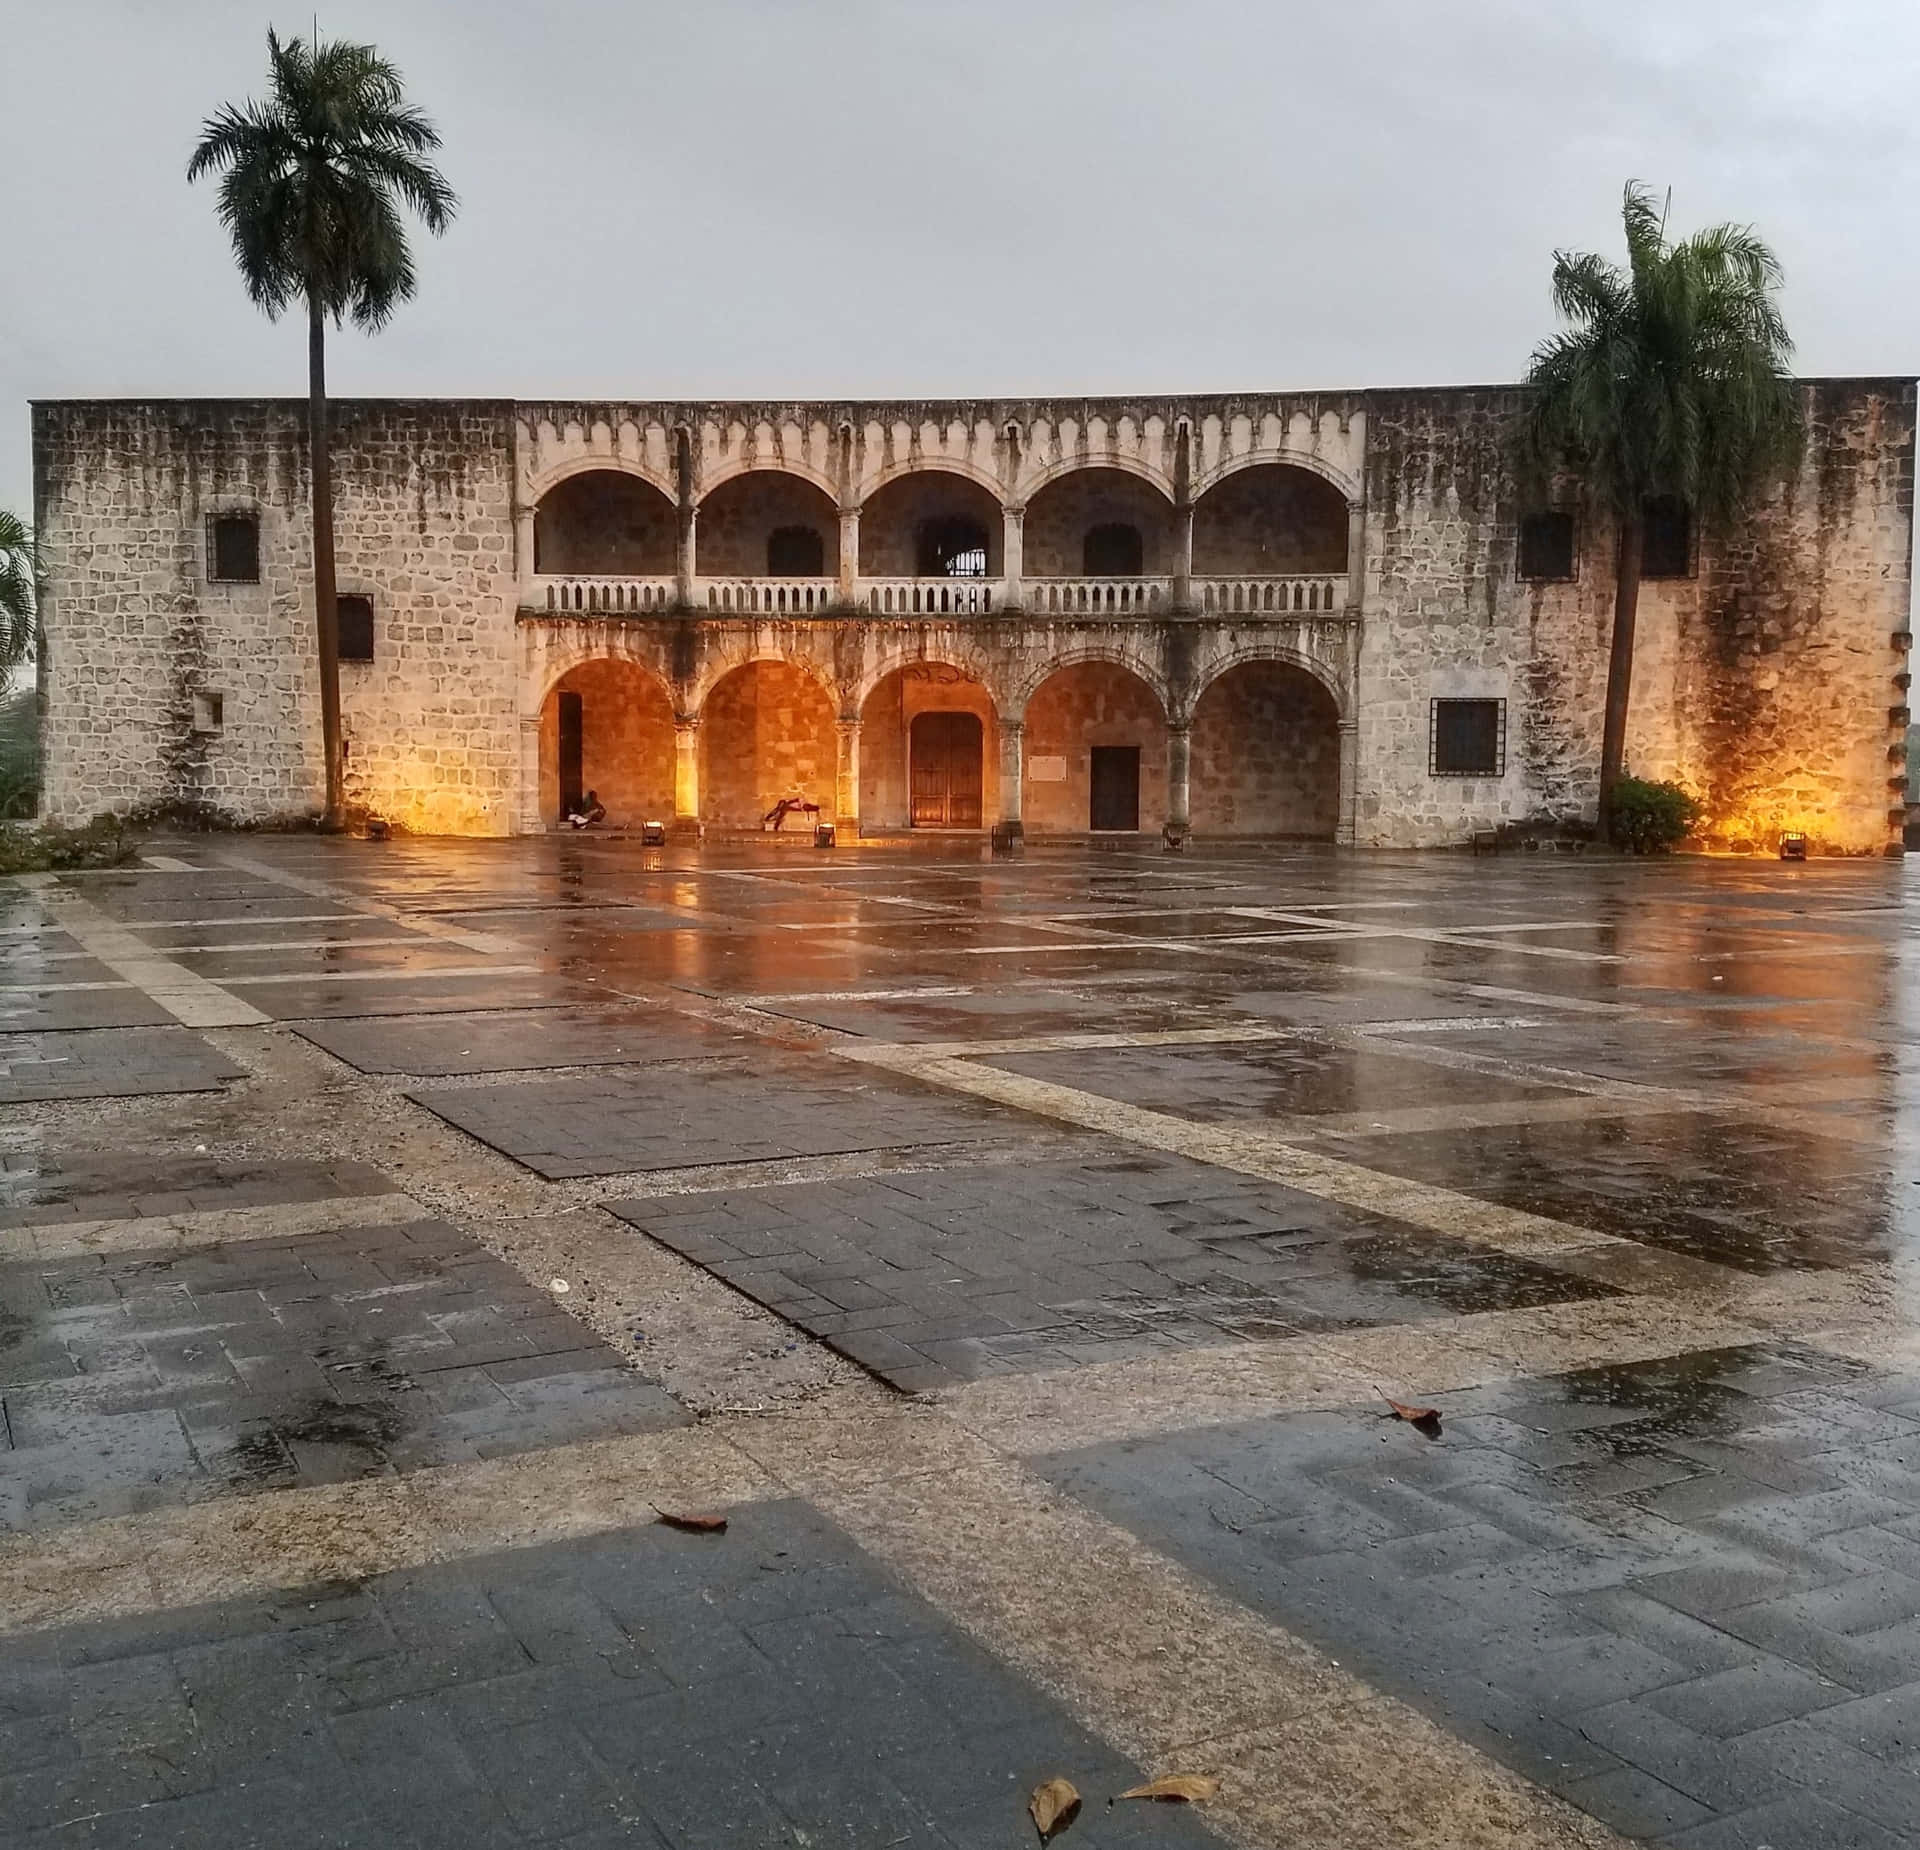 Palmerasjunto Al Alcázar De Colón Fondo de pantalla